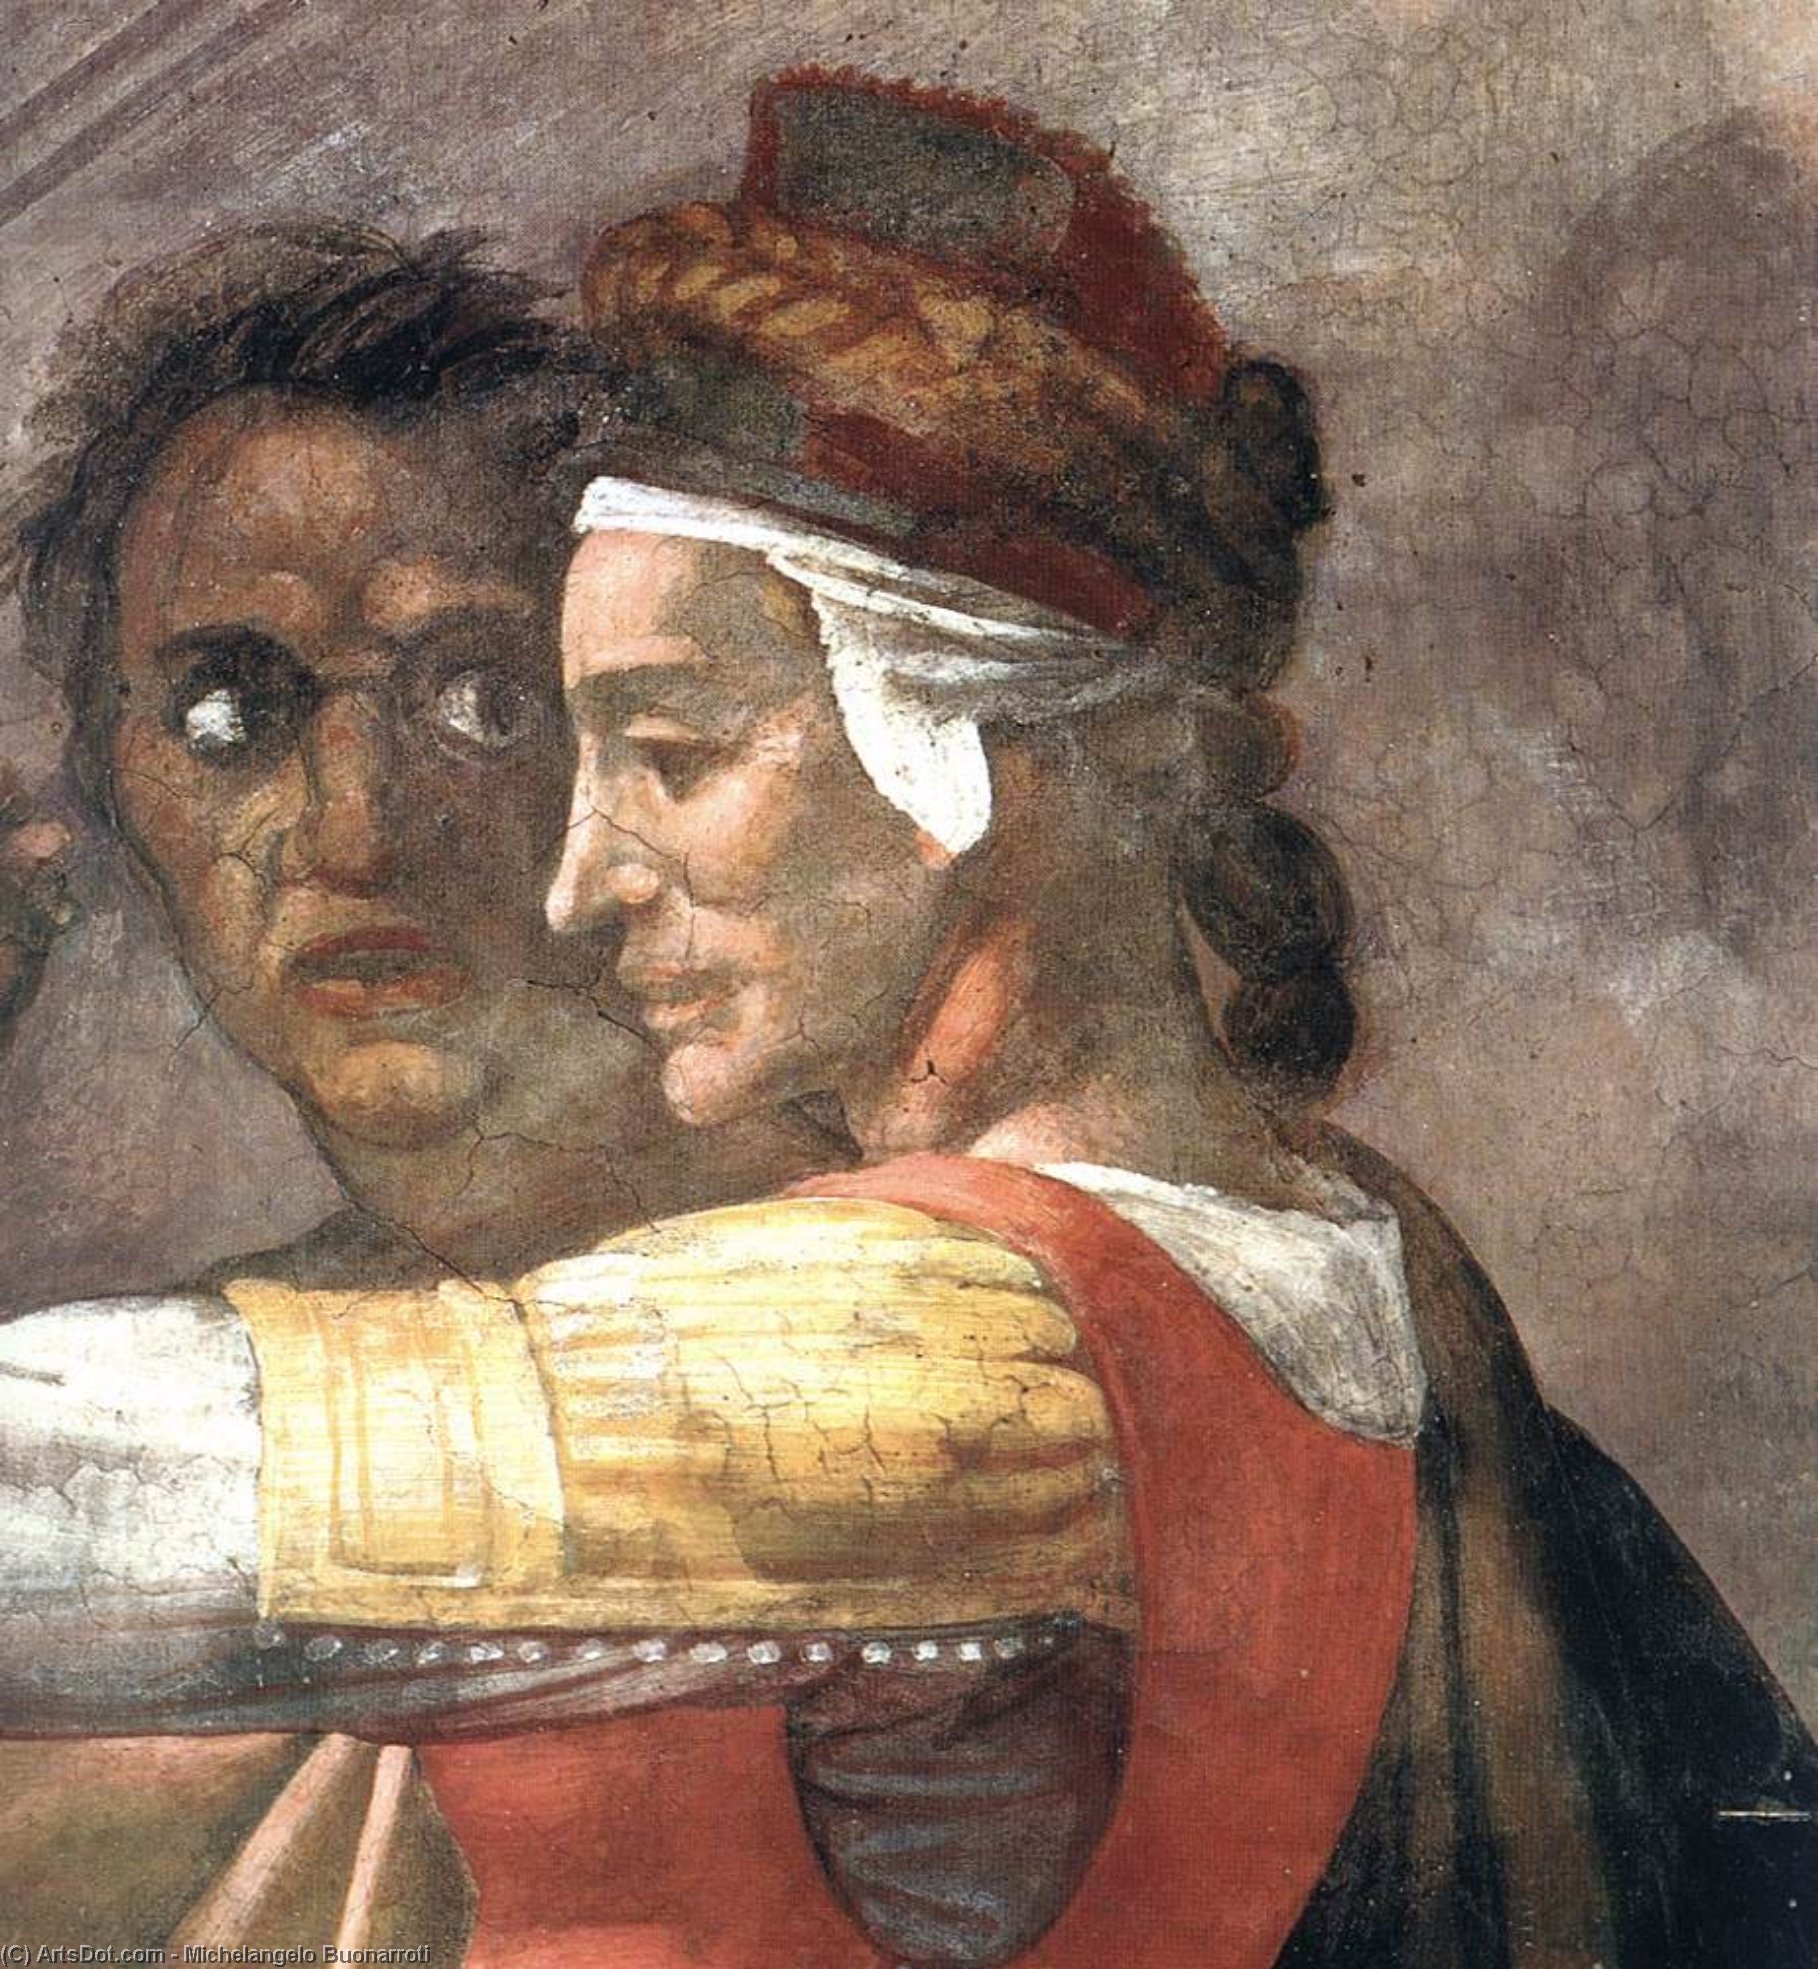 WikiOO.org - Enciclopedia of Fine Arts - Pictura, lucrări de artă Michelangelo Buonarroti - Eleazar - Matthan (detail)